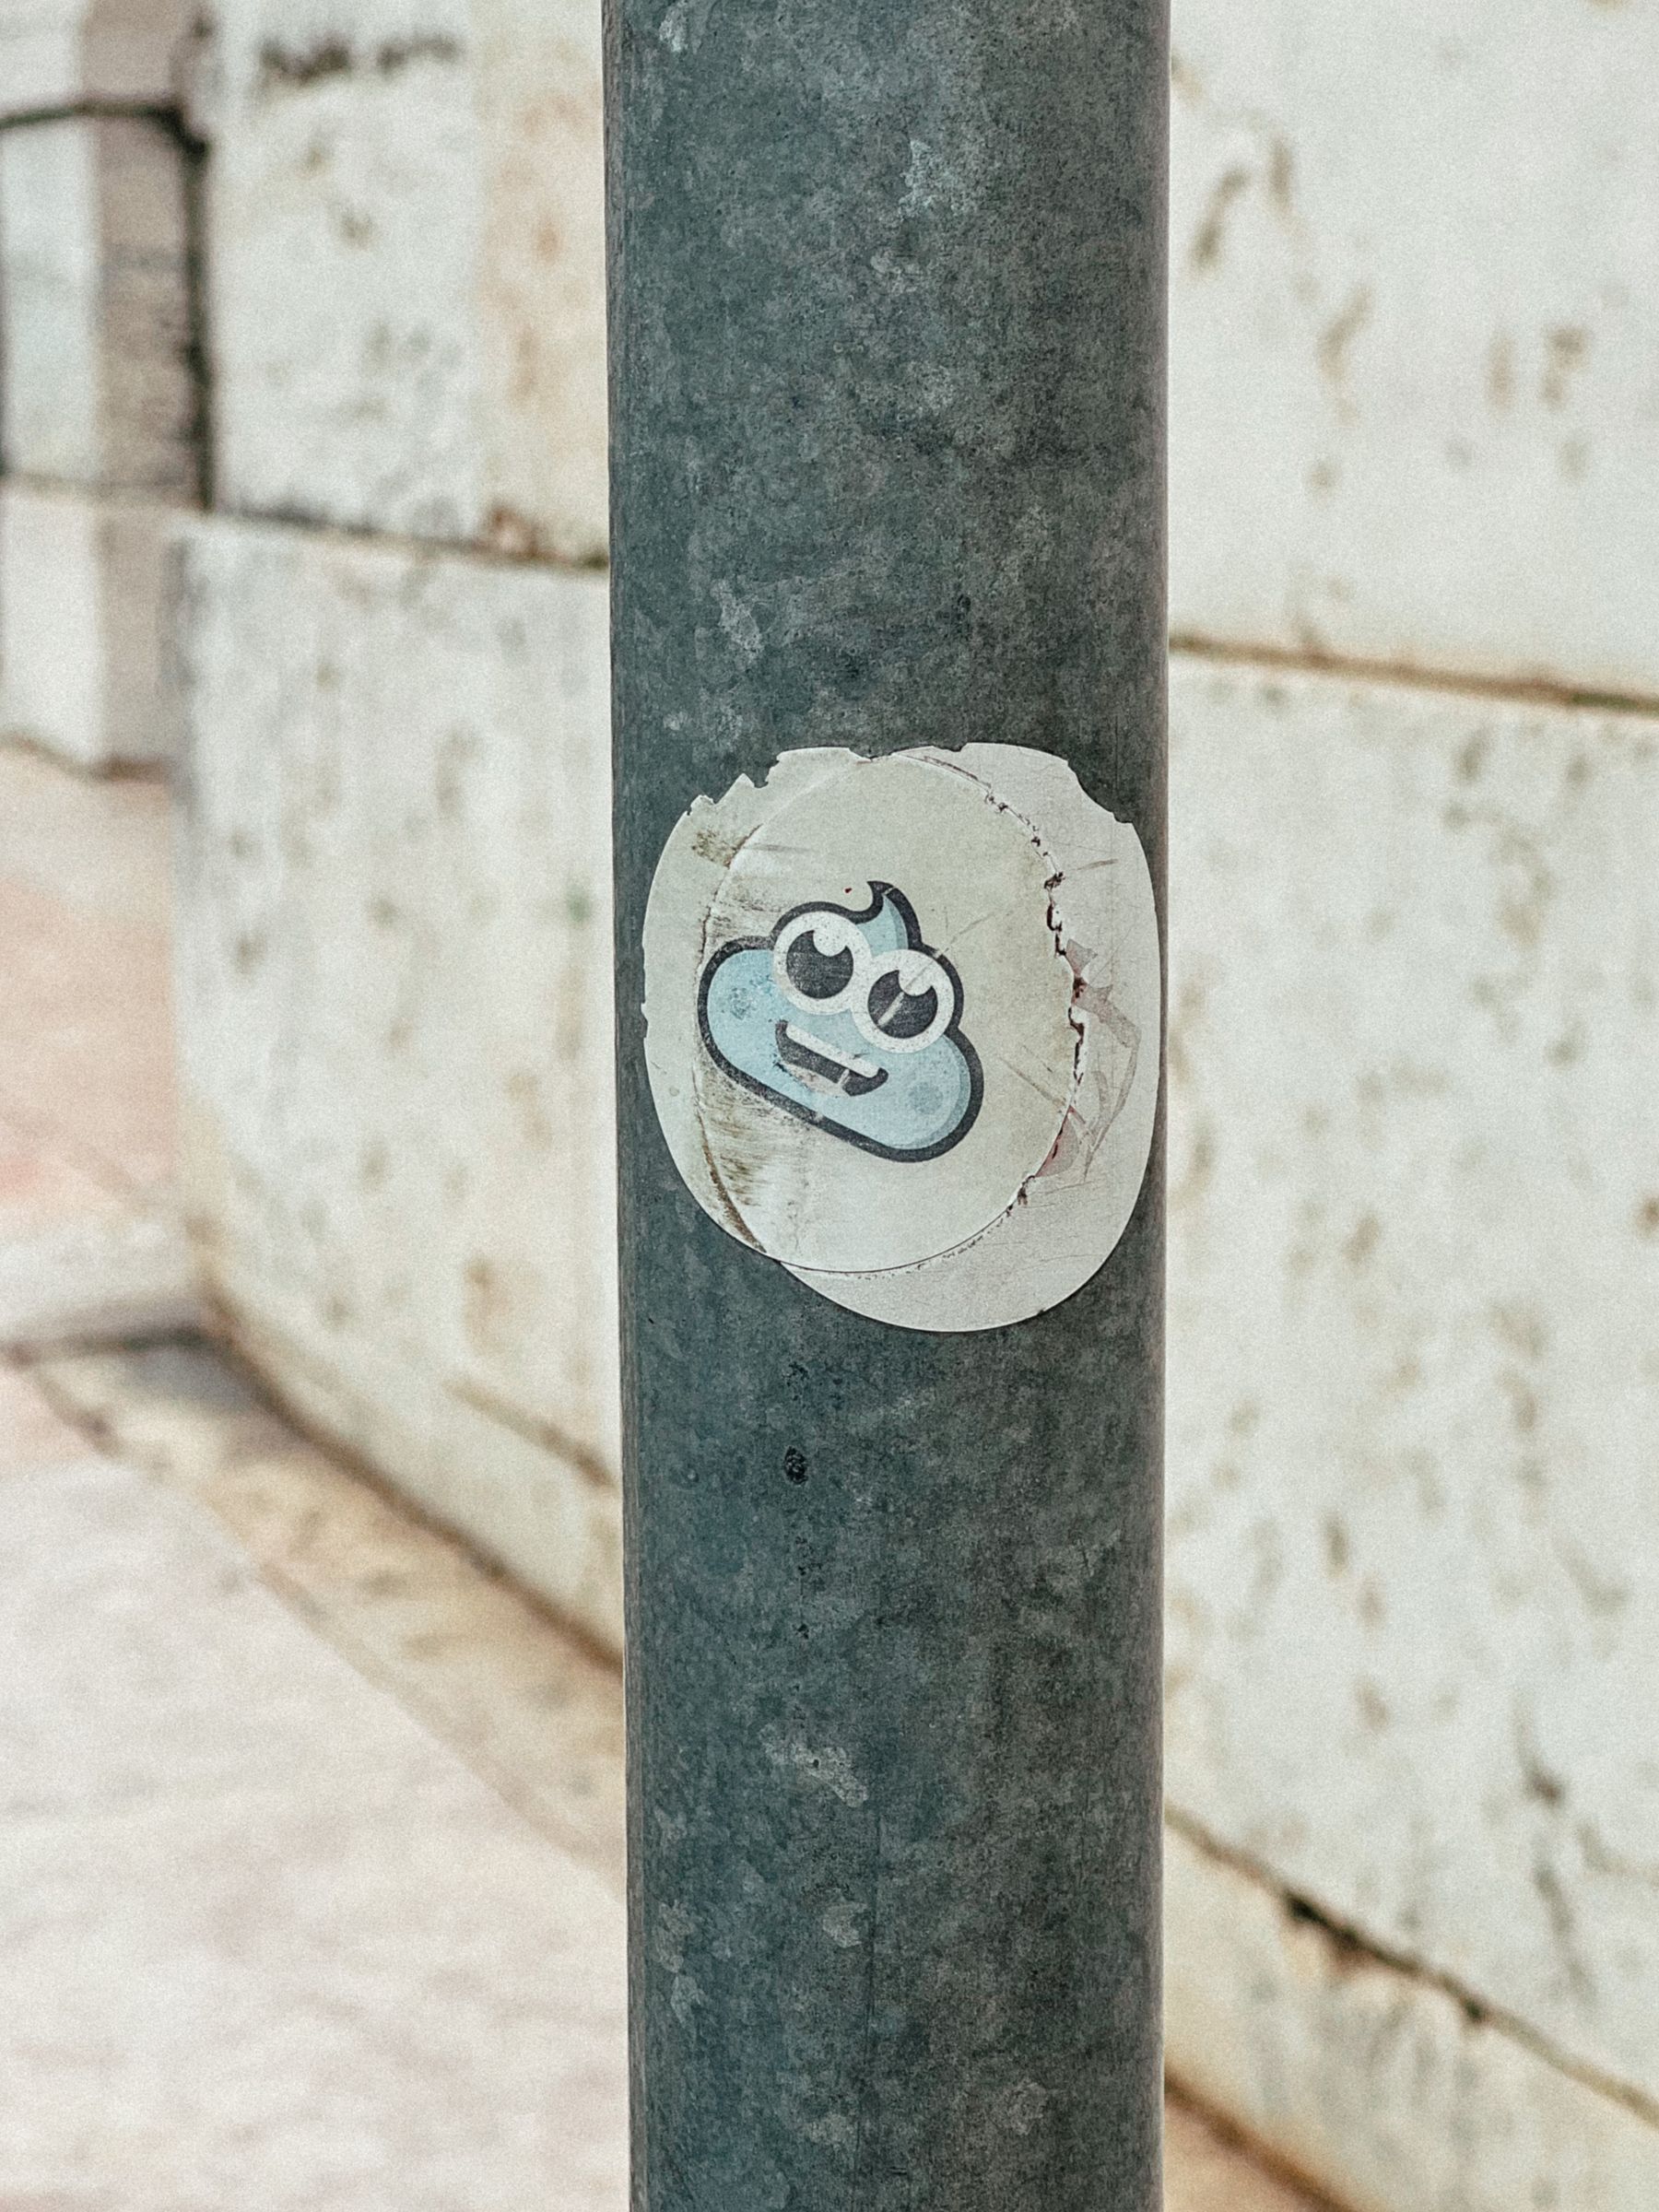 A faded sticker, originally a blue poo emoji.